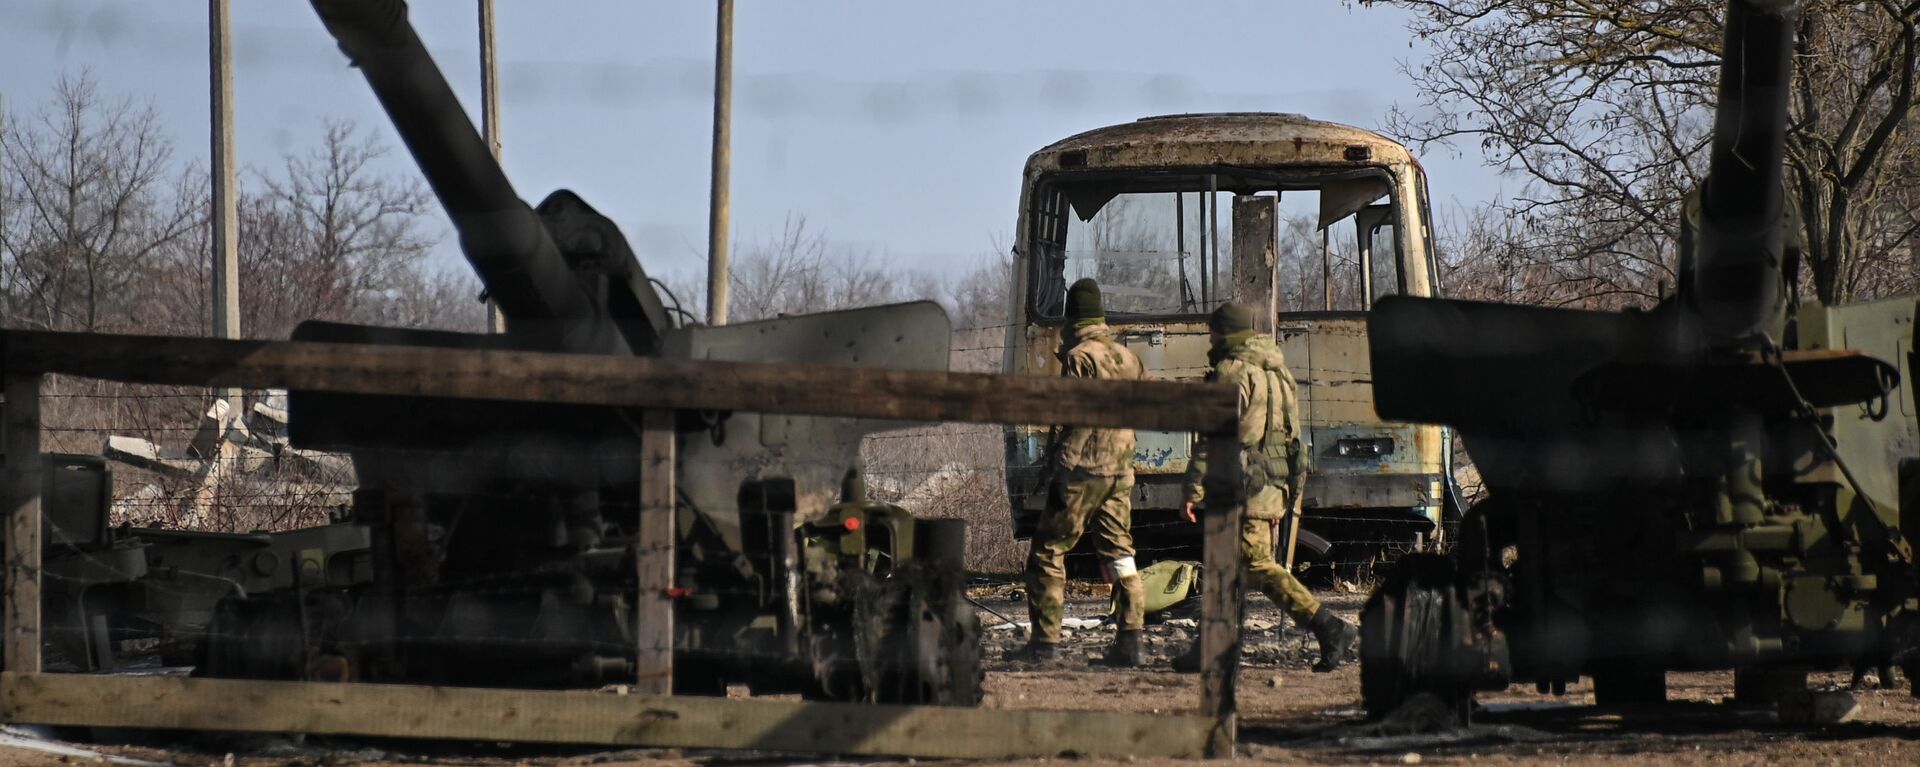 مدفع هاوتزر من وحدة مدفعية تركتها القوات المسلحة الأوكرانية في بيرديانسك، أوكرانيا 12 مارس 2022 - سبوتنيك عربي, 1920, 27.07.2022